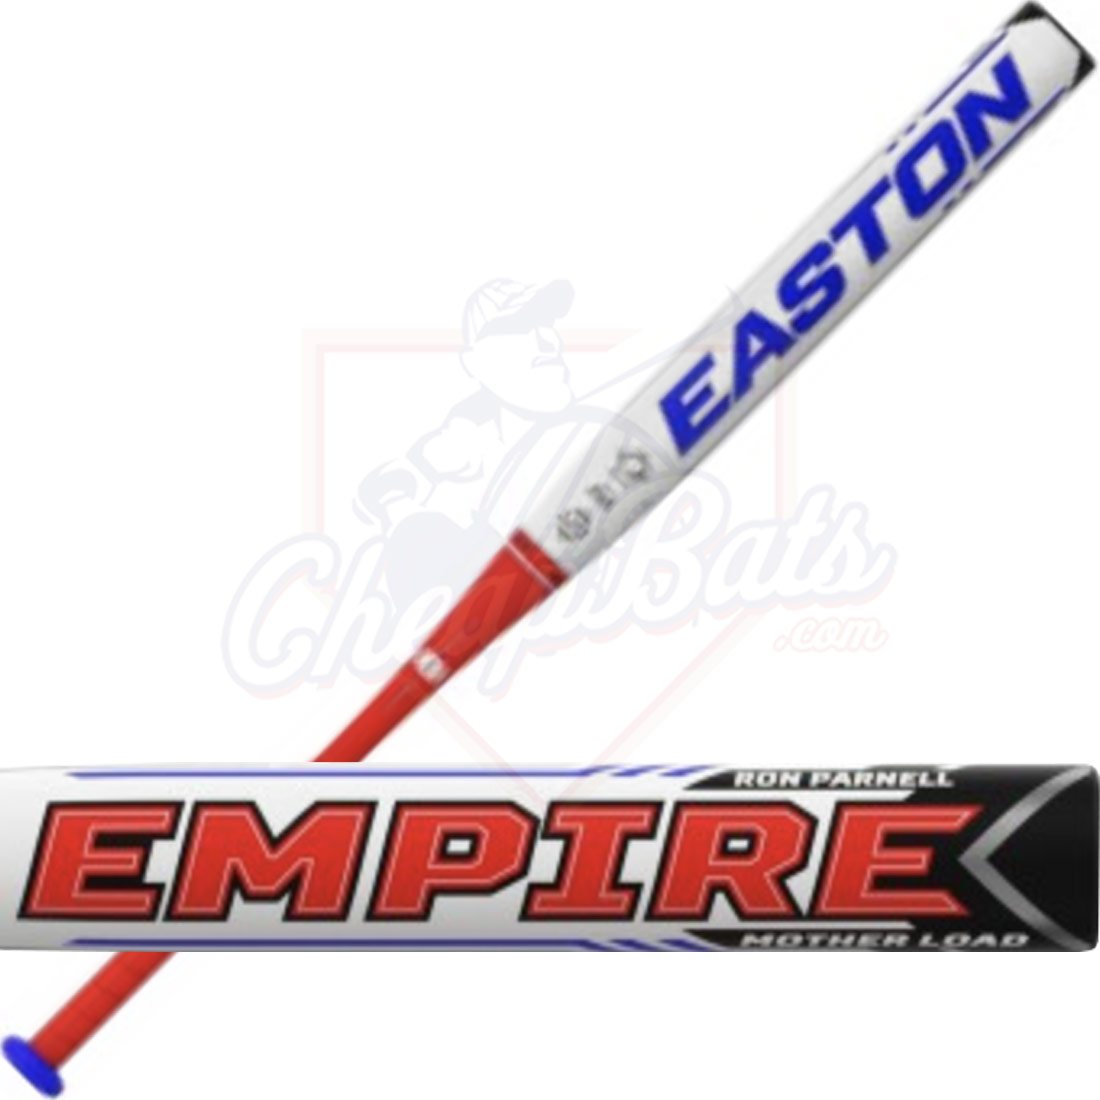 2020 Easton Empire Ron Parnell Senior Slowpitch Softball Bat End Loaded SSUSA SP20RPML